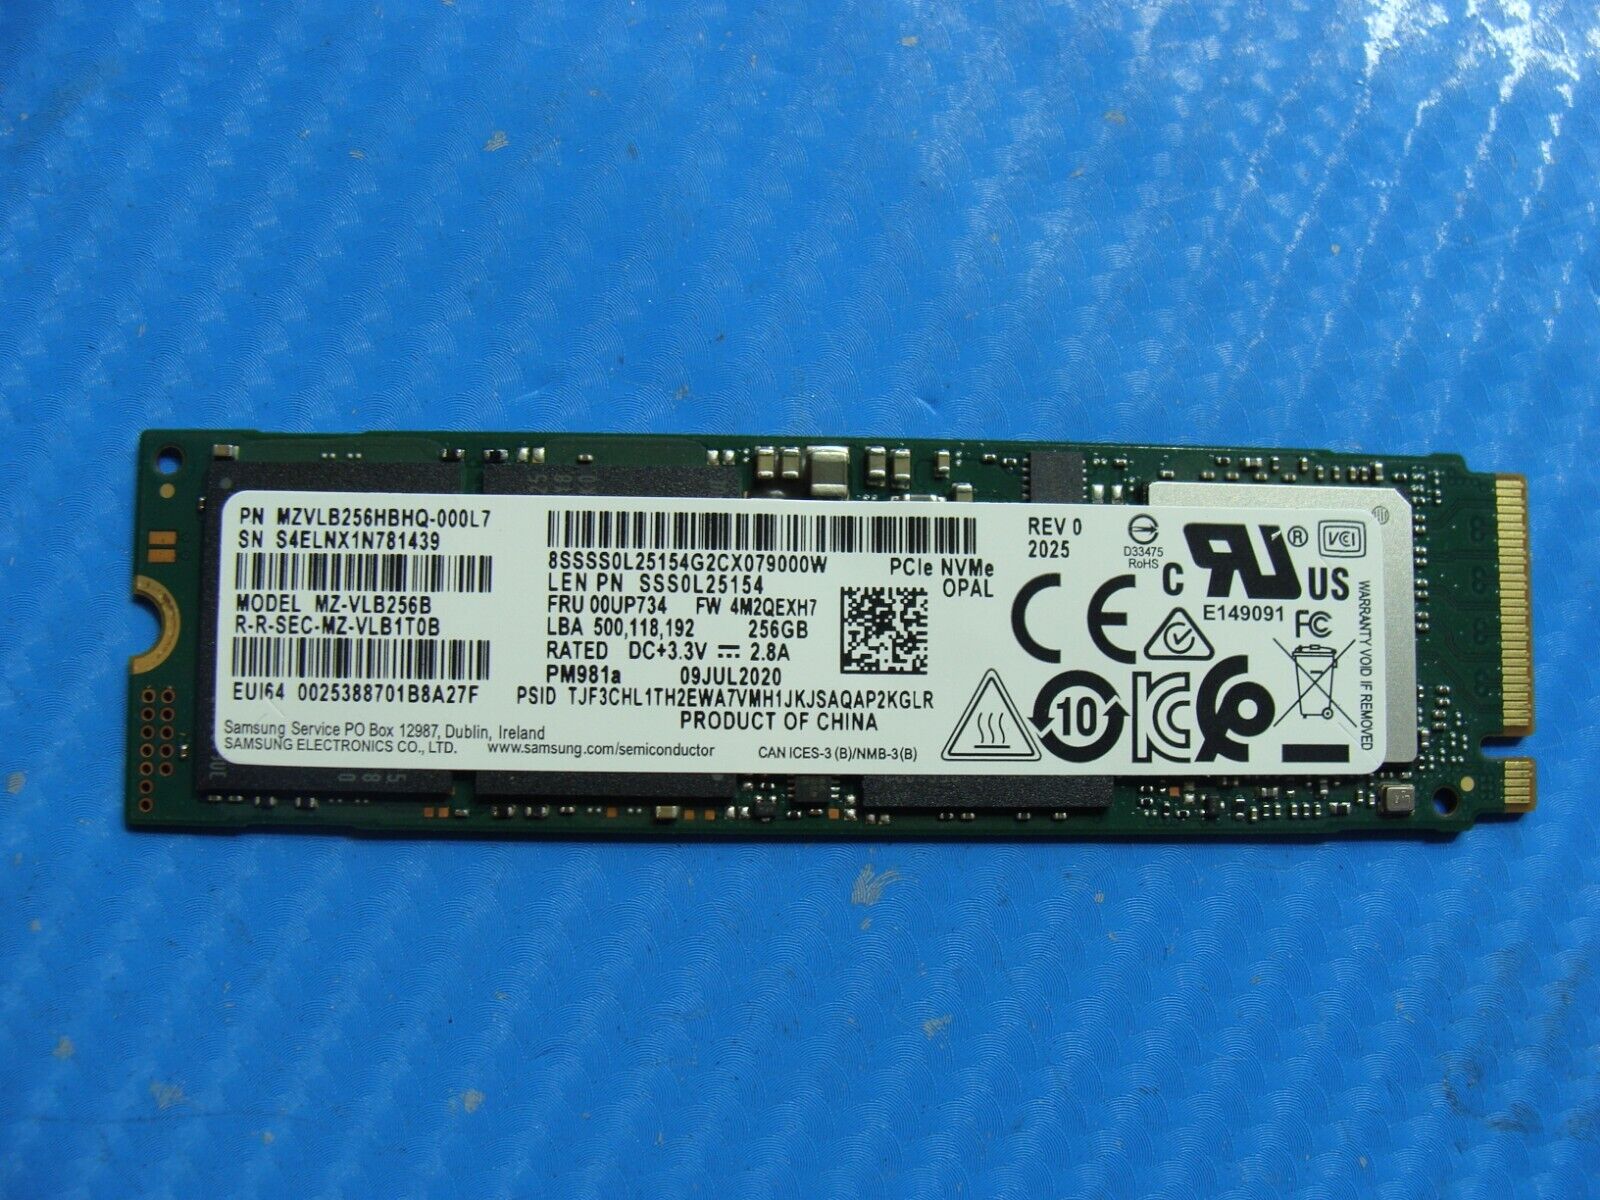 Lenovo Thinkpad x13 Yoga Samsung 256GB NVMe M.2 SSD Solid State Drive MZ-VLB256B